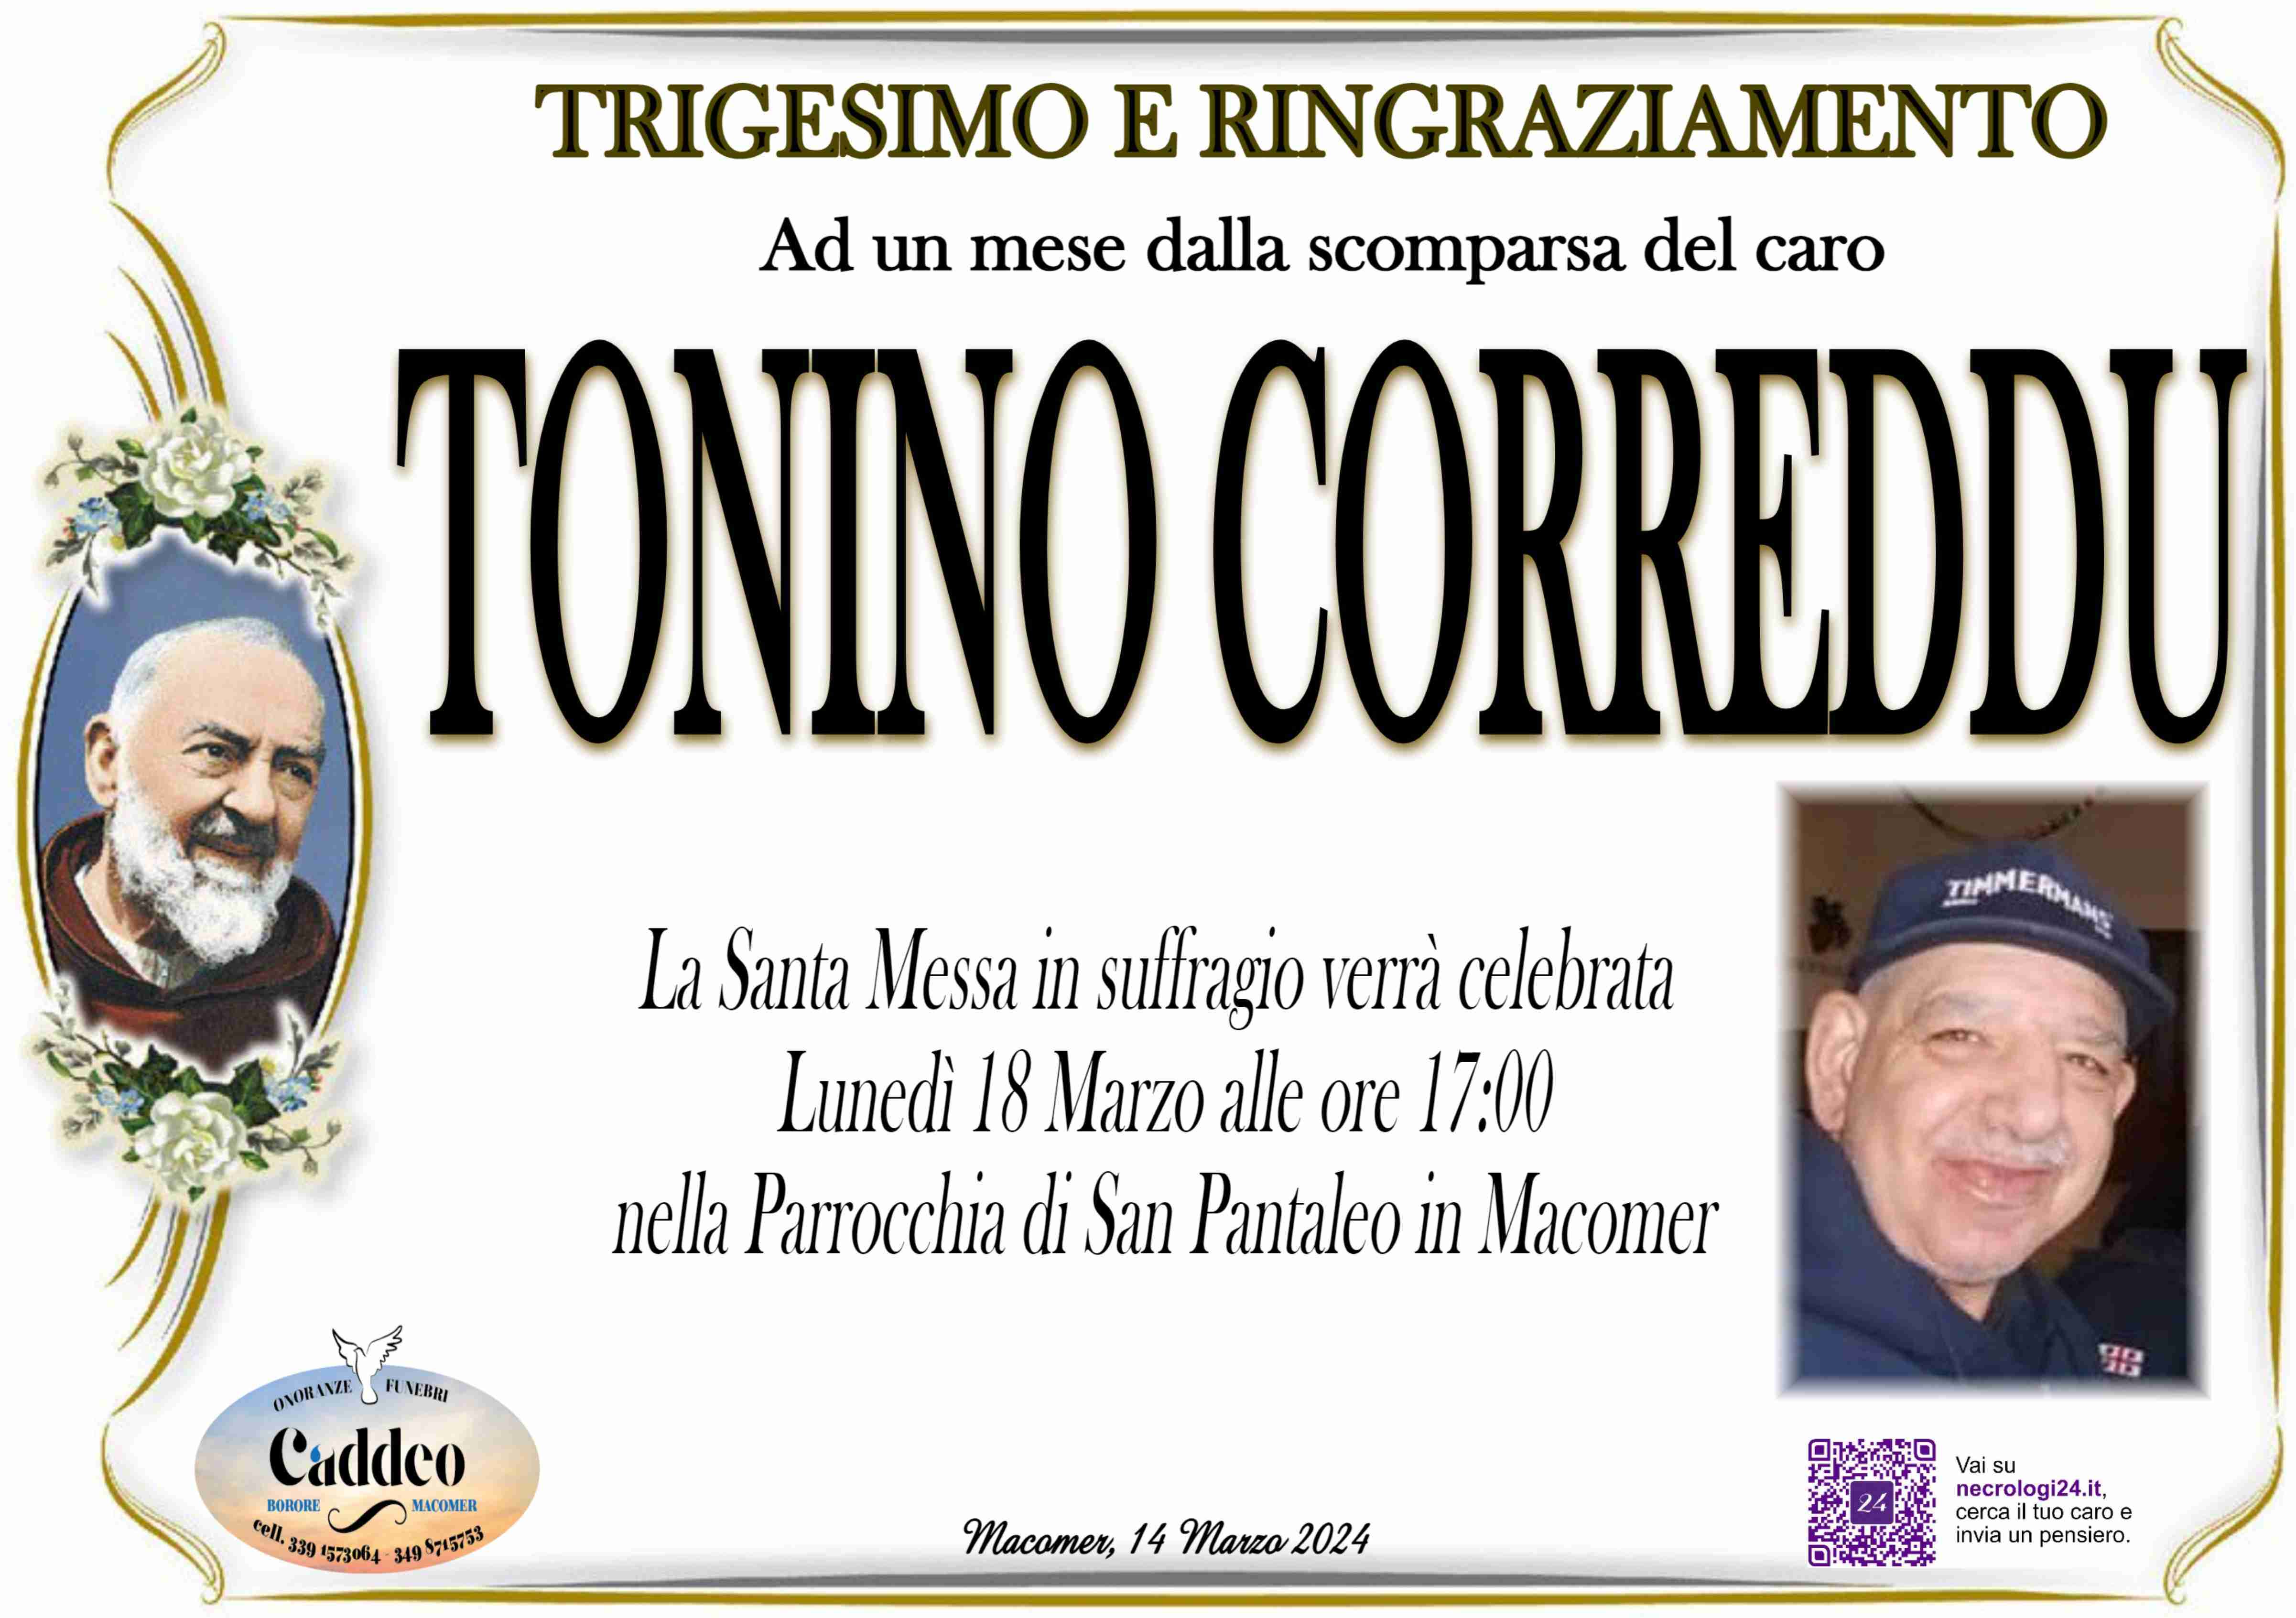 Tonino Correddu